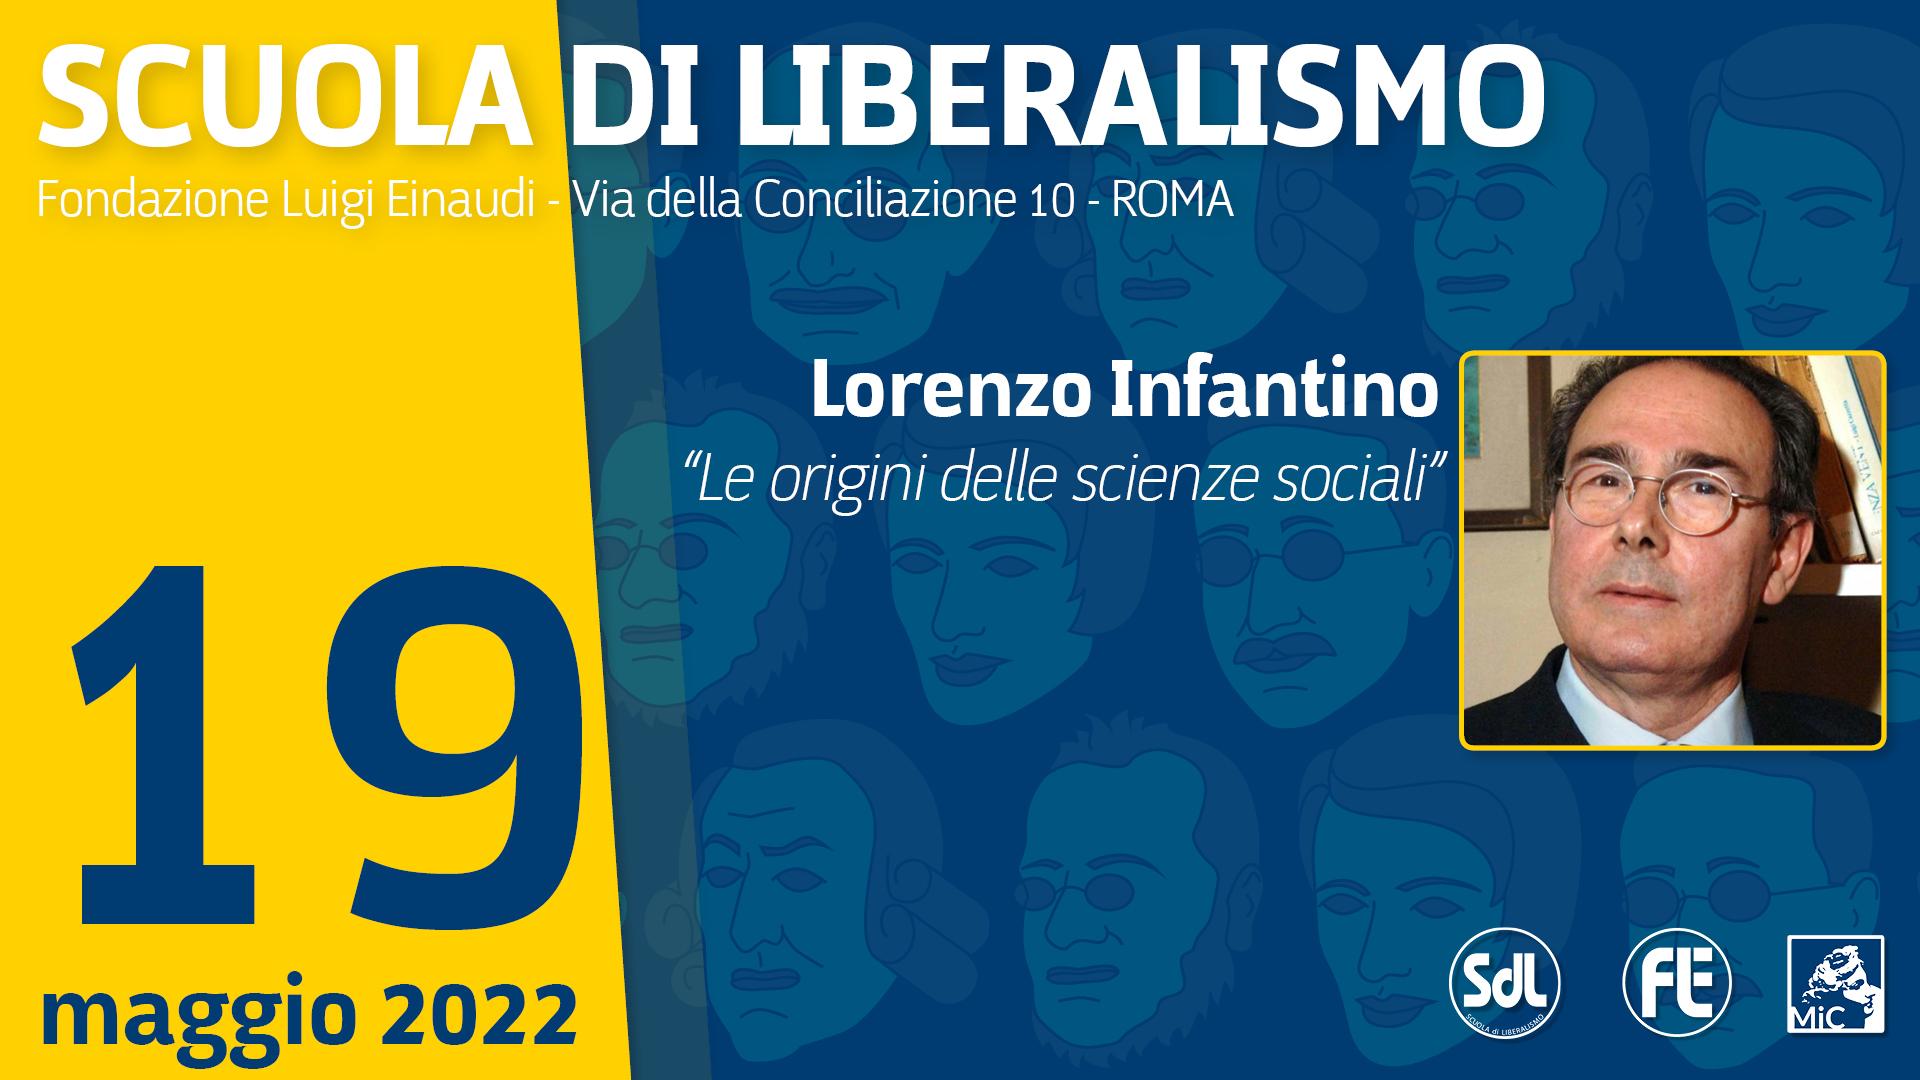 Scuola di Liberalismo 2022 – Lorenzo Infantino “Le origini delle scienze sociali”